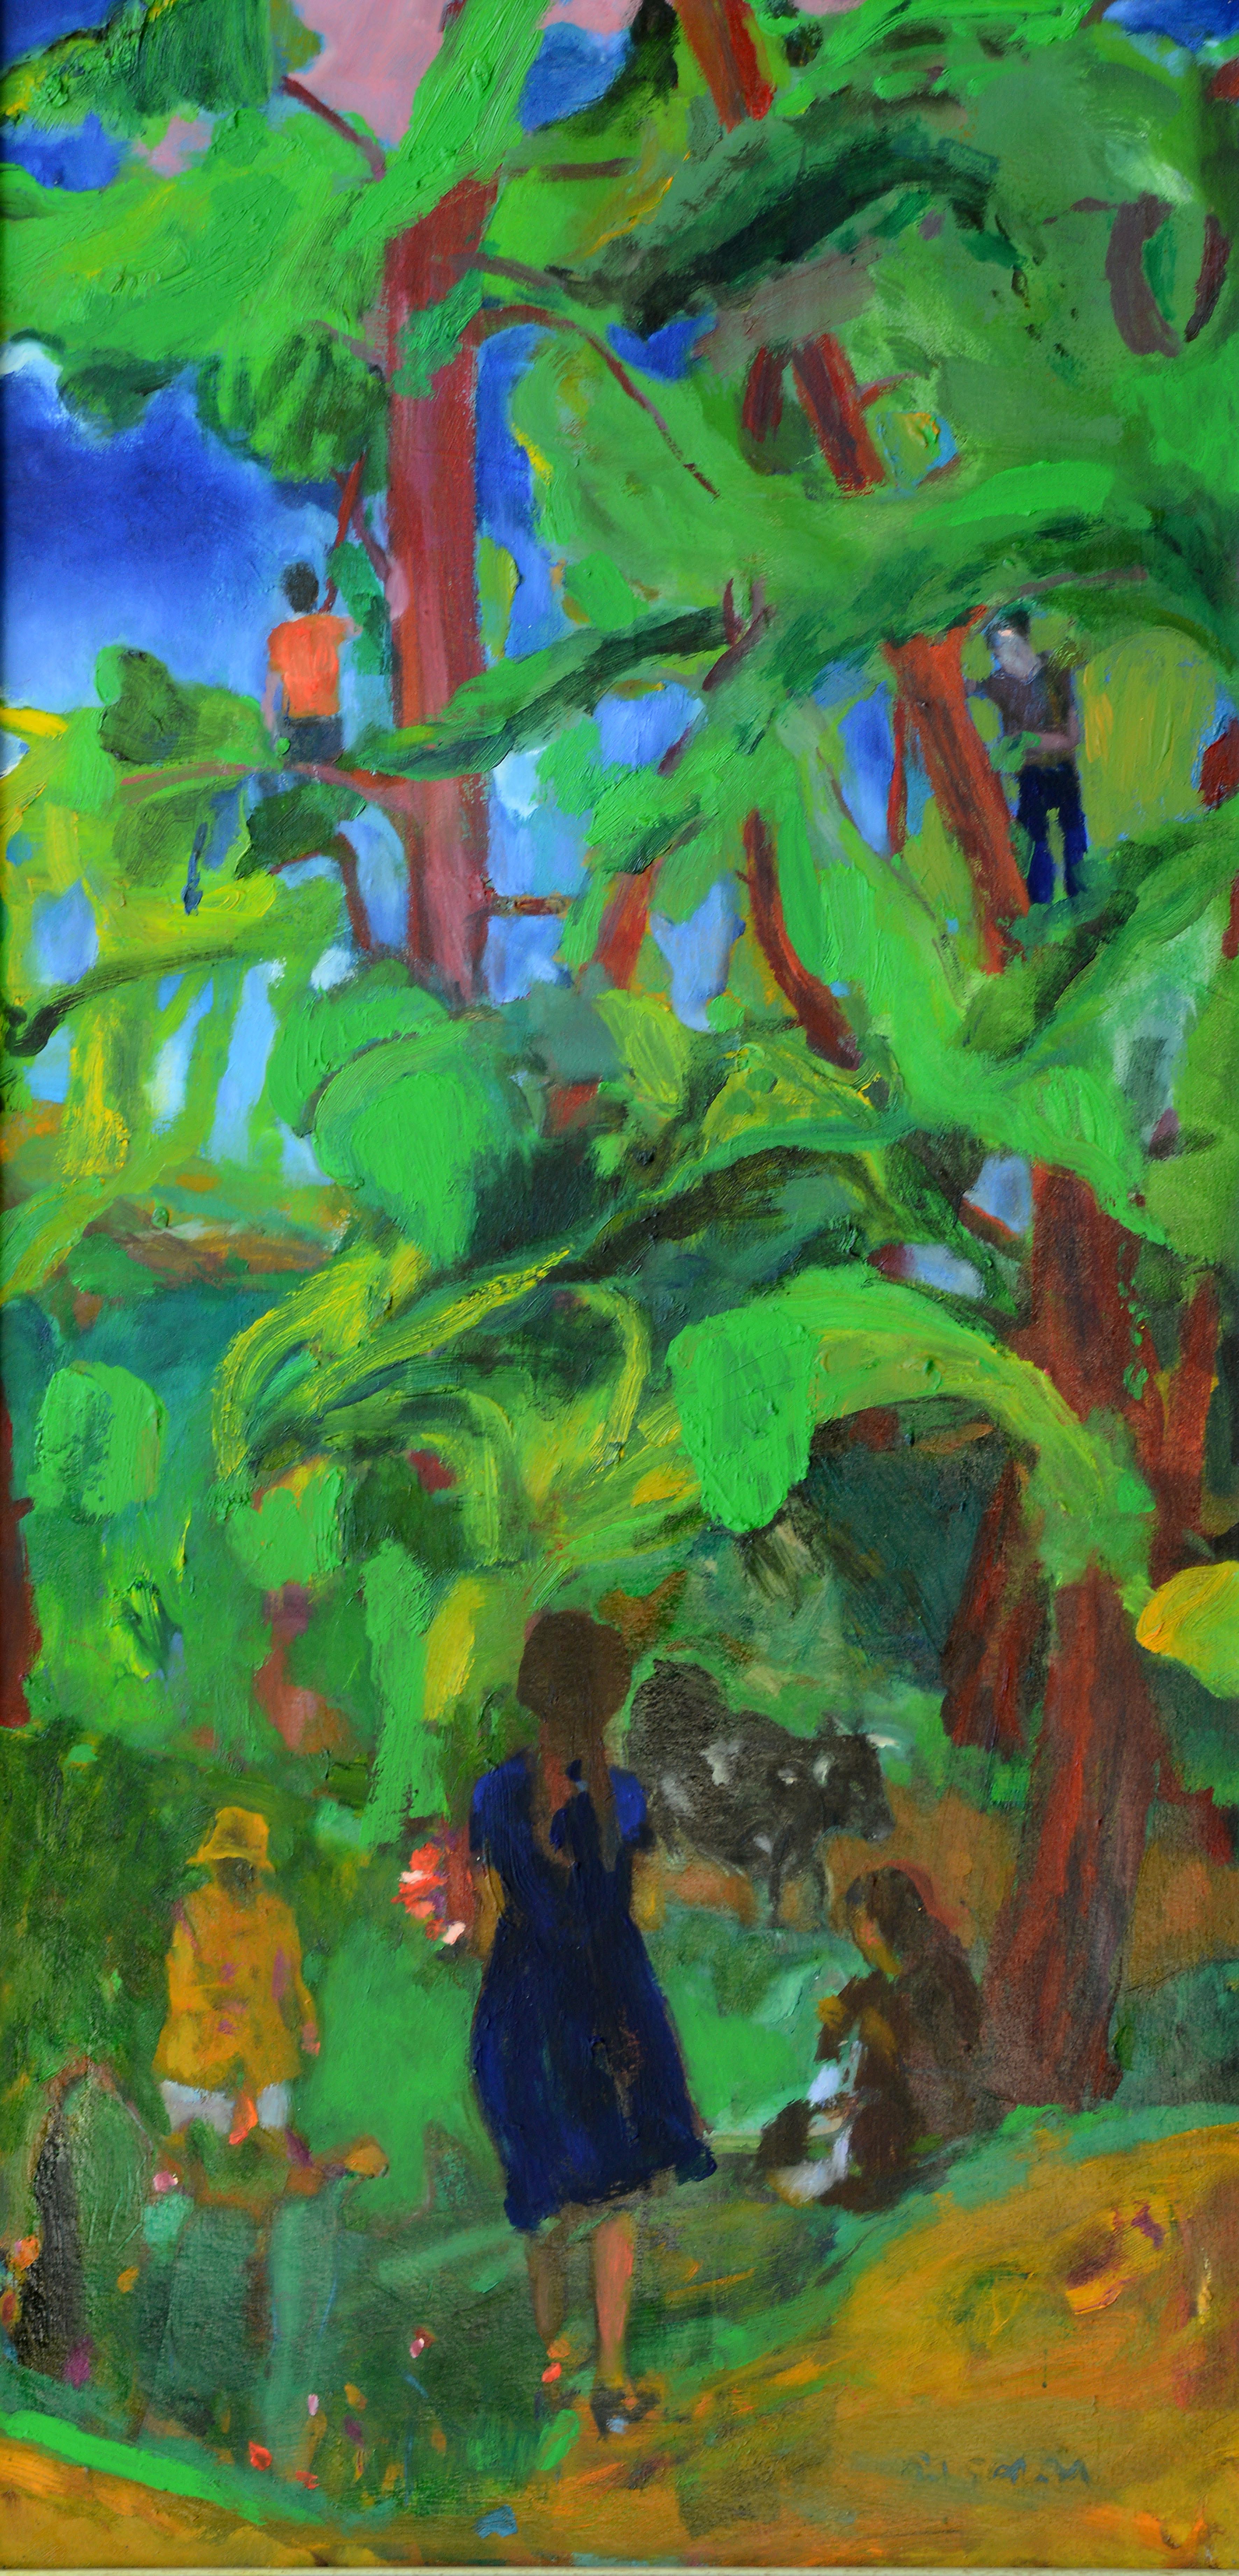 Çocukluk Ağaçlarımızın Yeşilindeki Hınzır, 2003, Tuval üzerine yağlıboya- Oil on canvas, 100x50 cm